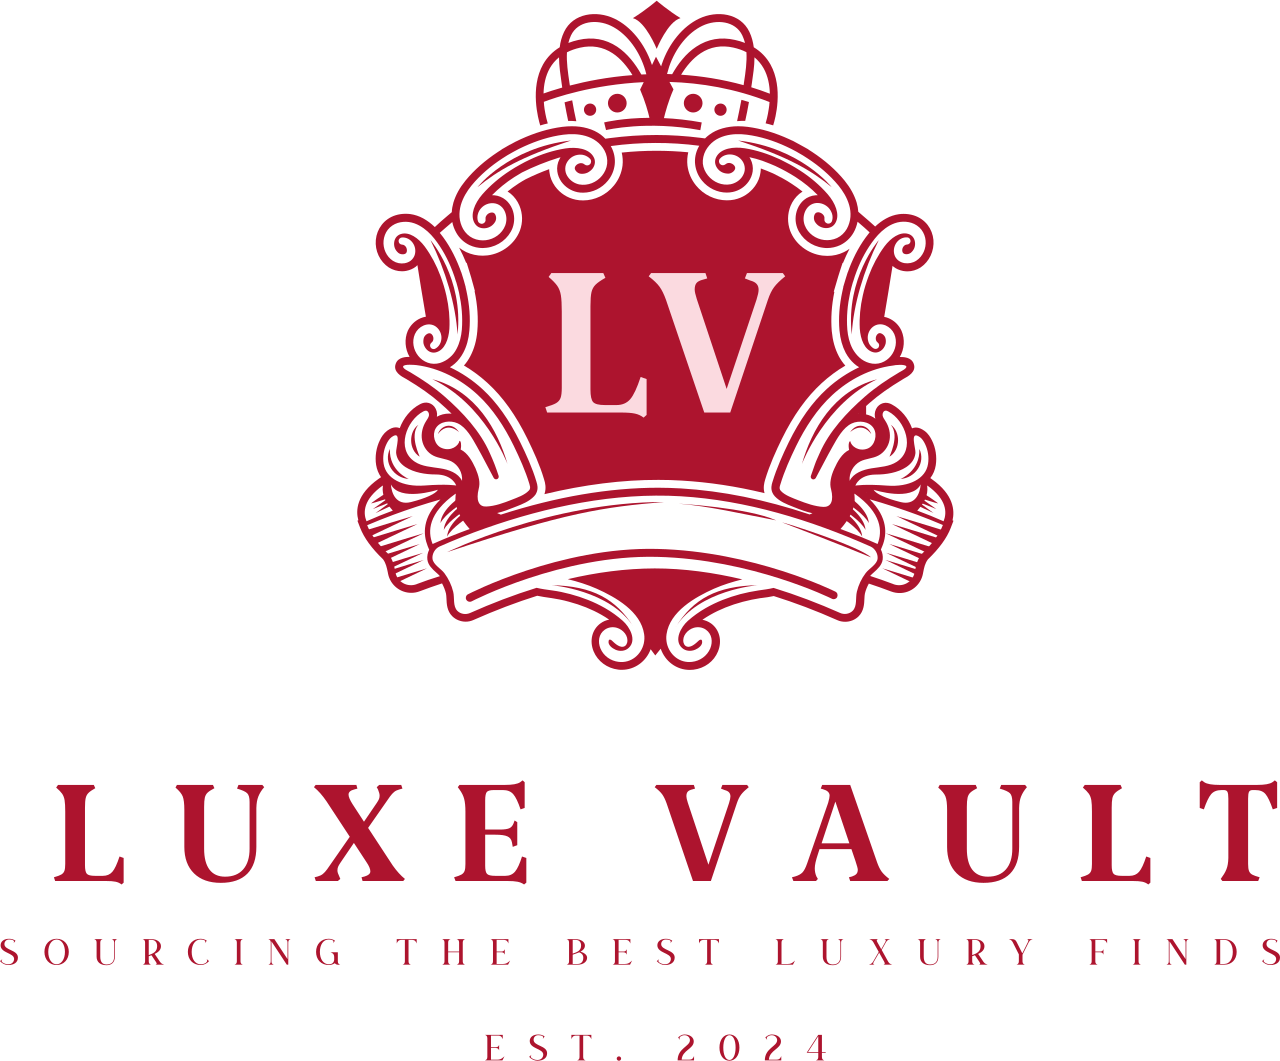 luxe vault's logo